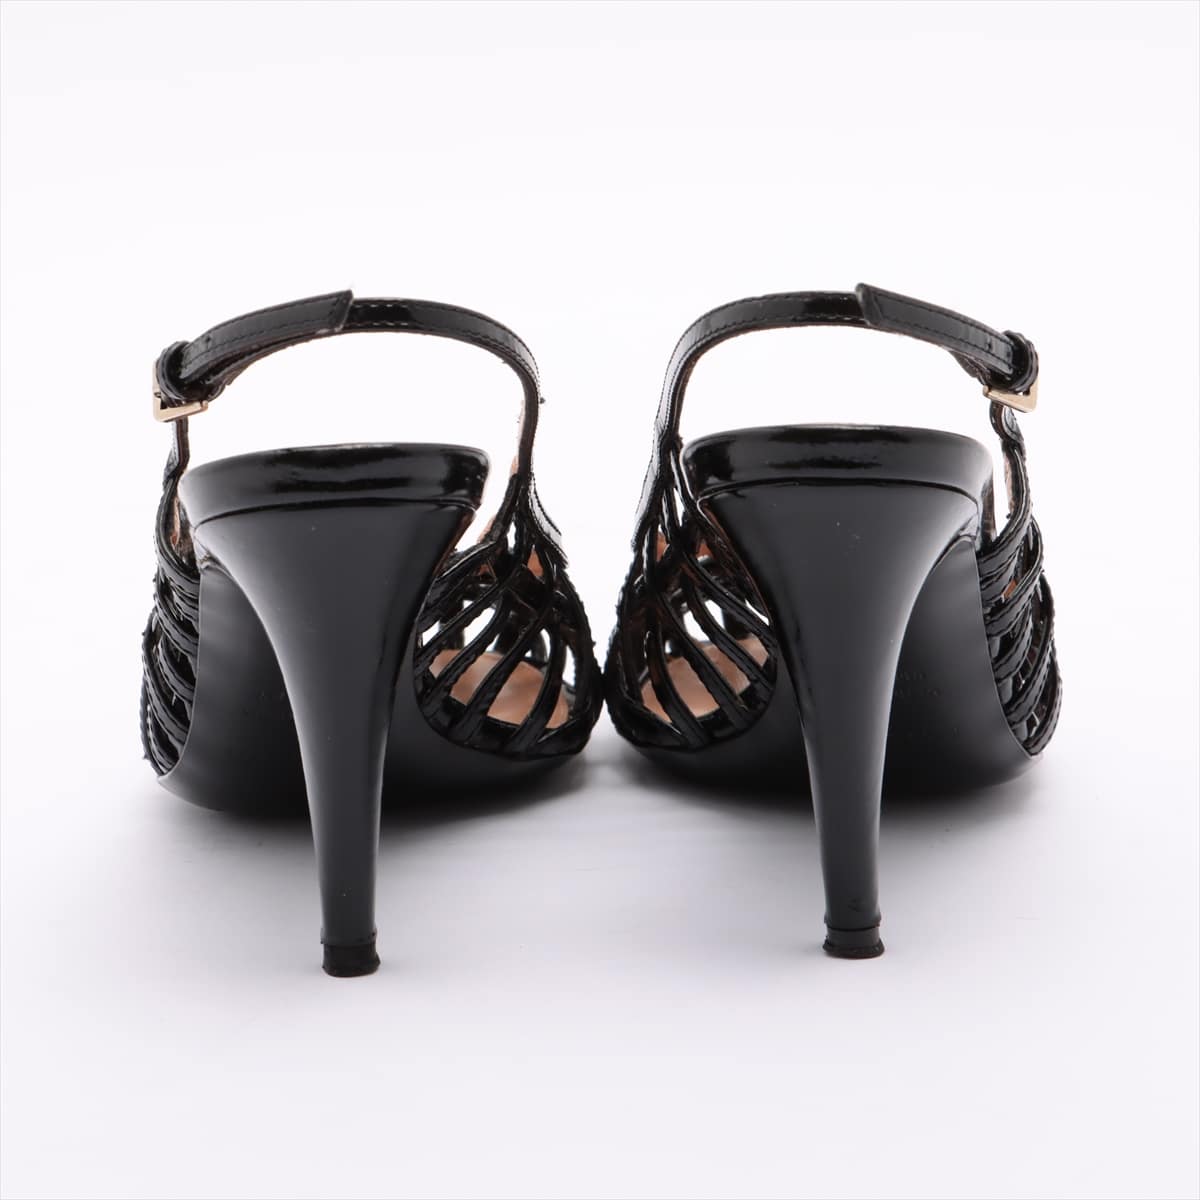 Sergio Rossi Patent leather Sandals 35 Ladies' Black